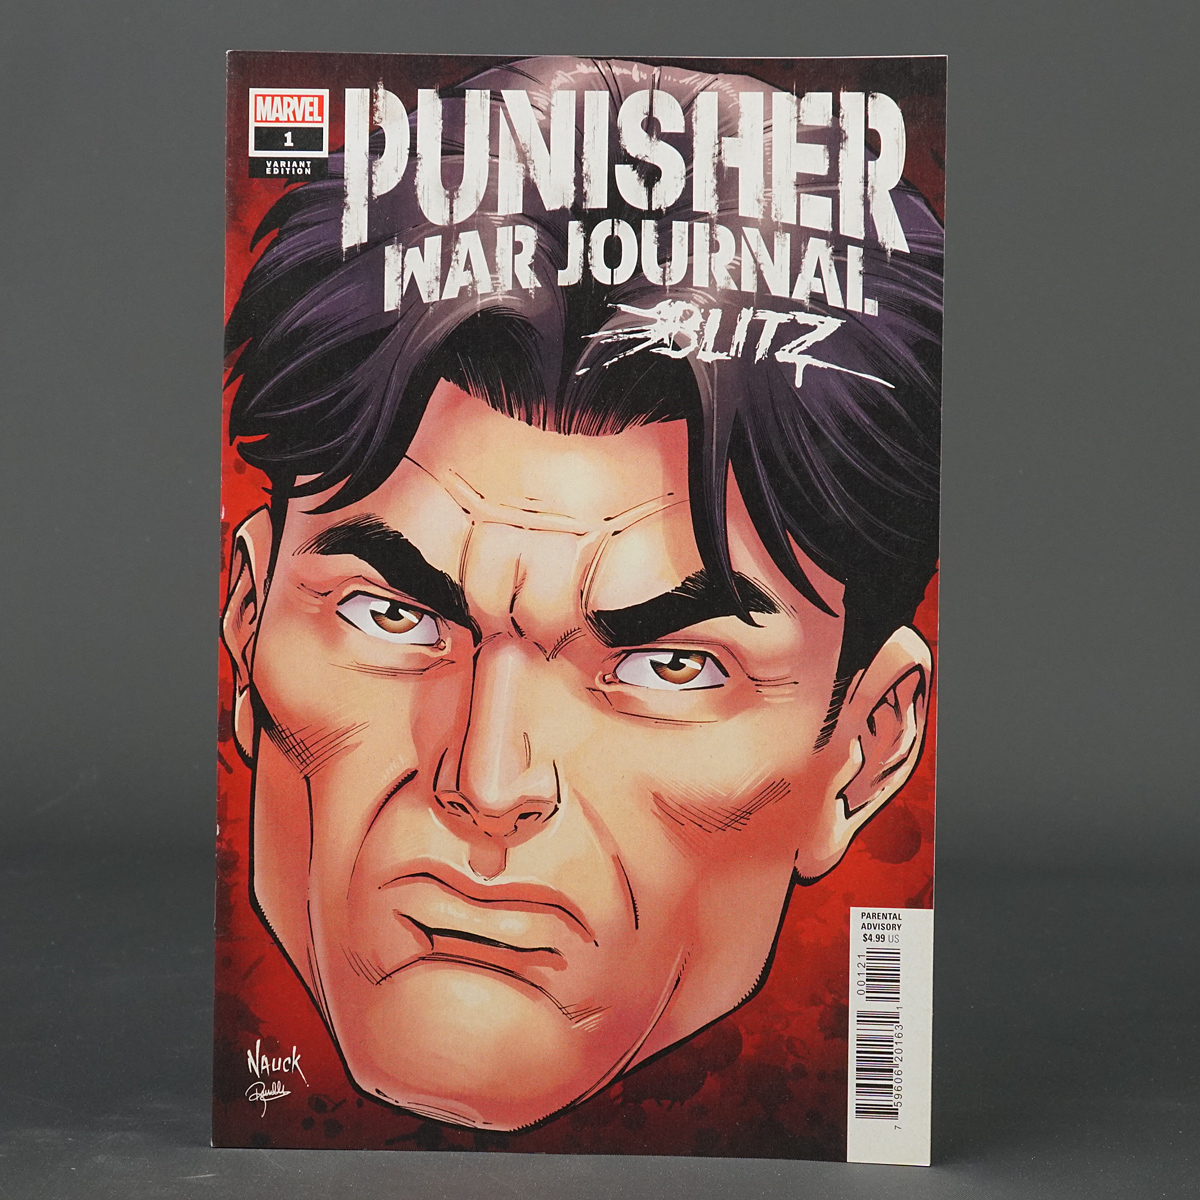 Punisher War Journal BLITZ #1 var headshot Marvel Comics APR220888 (CA) Nauck